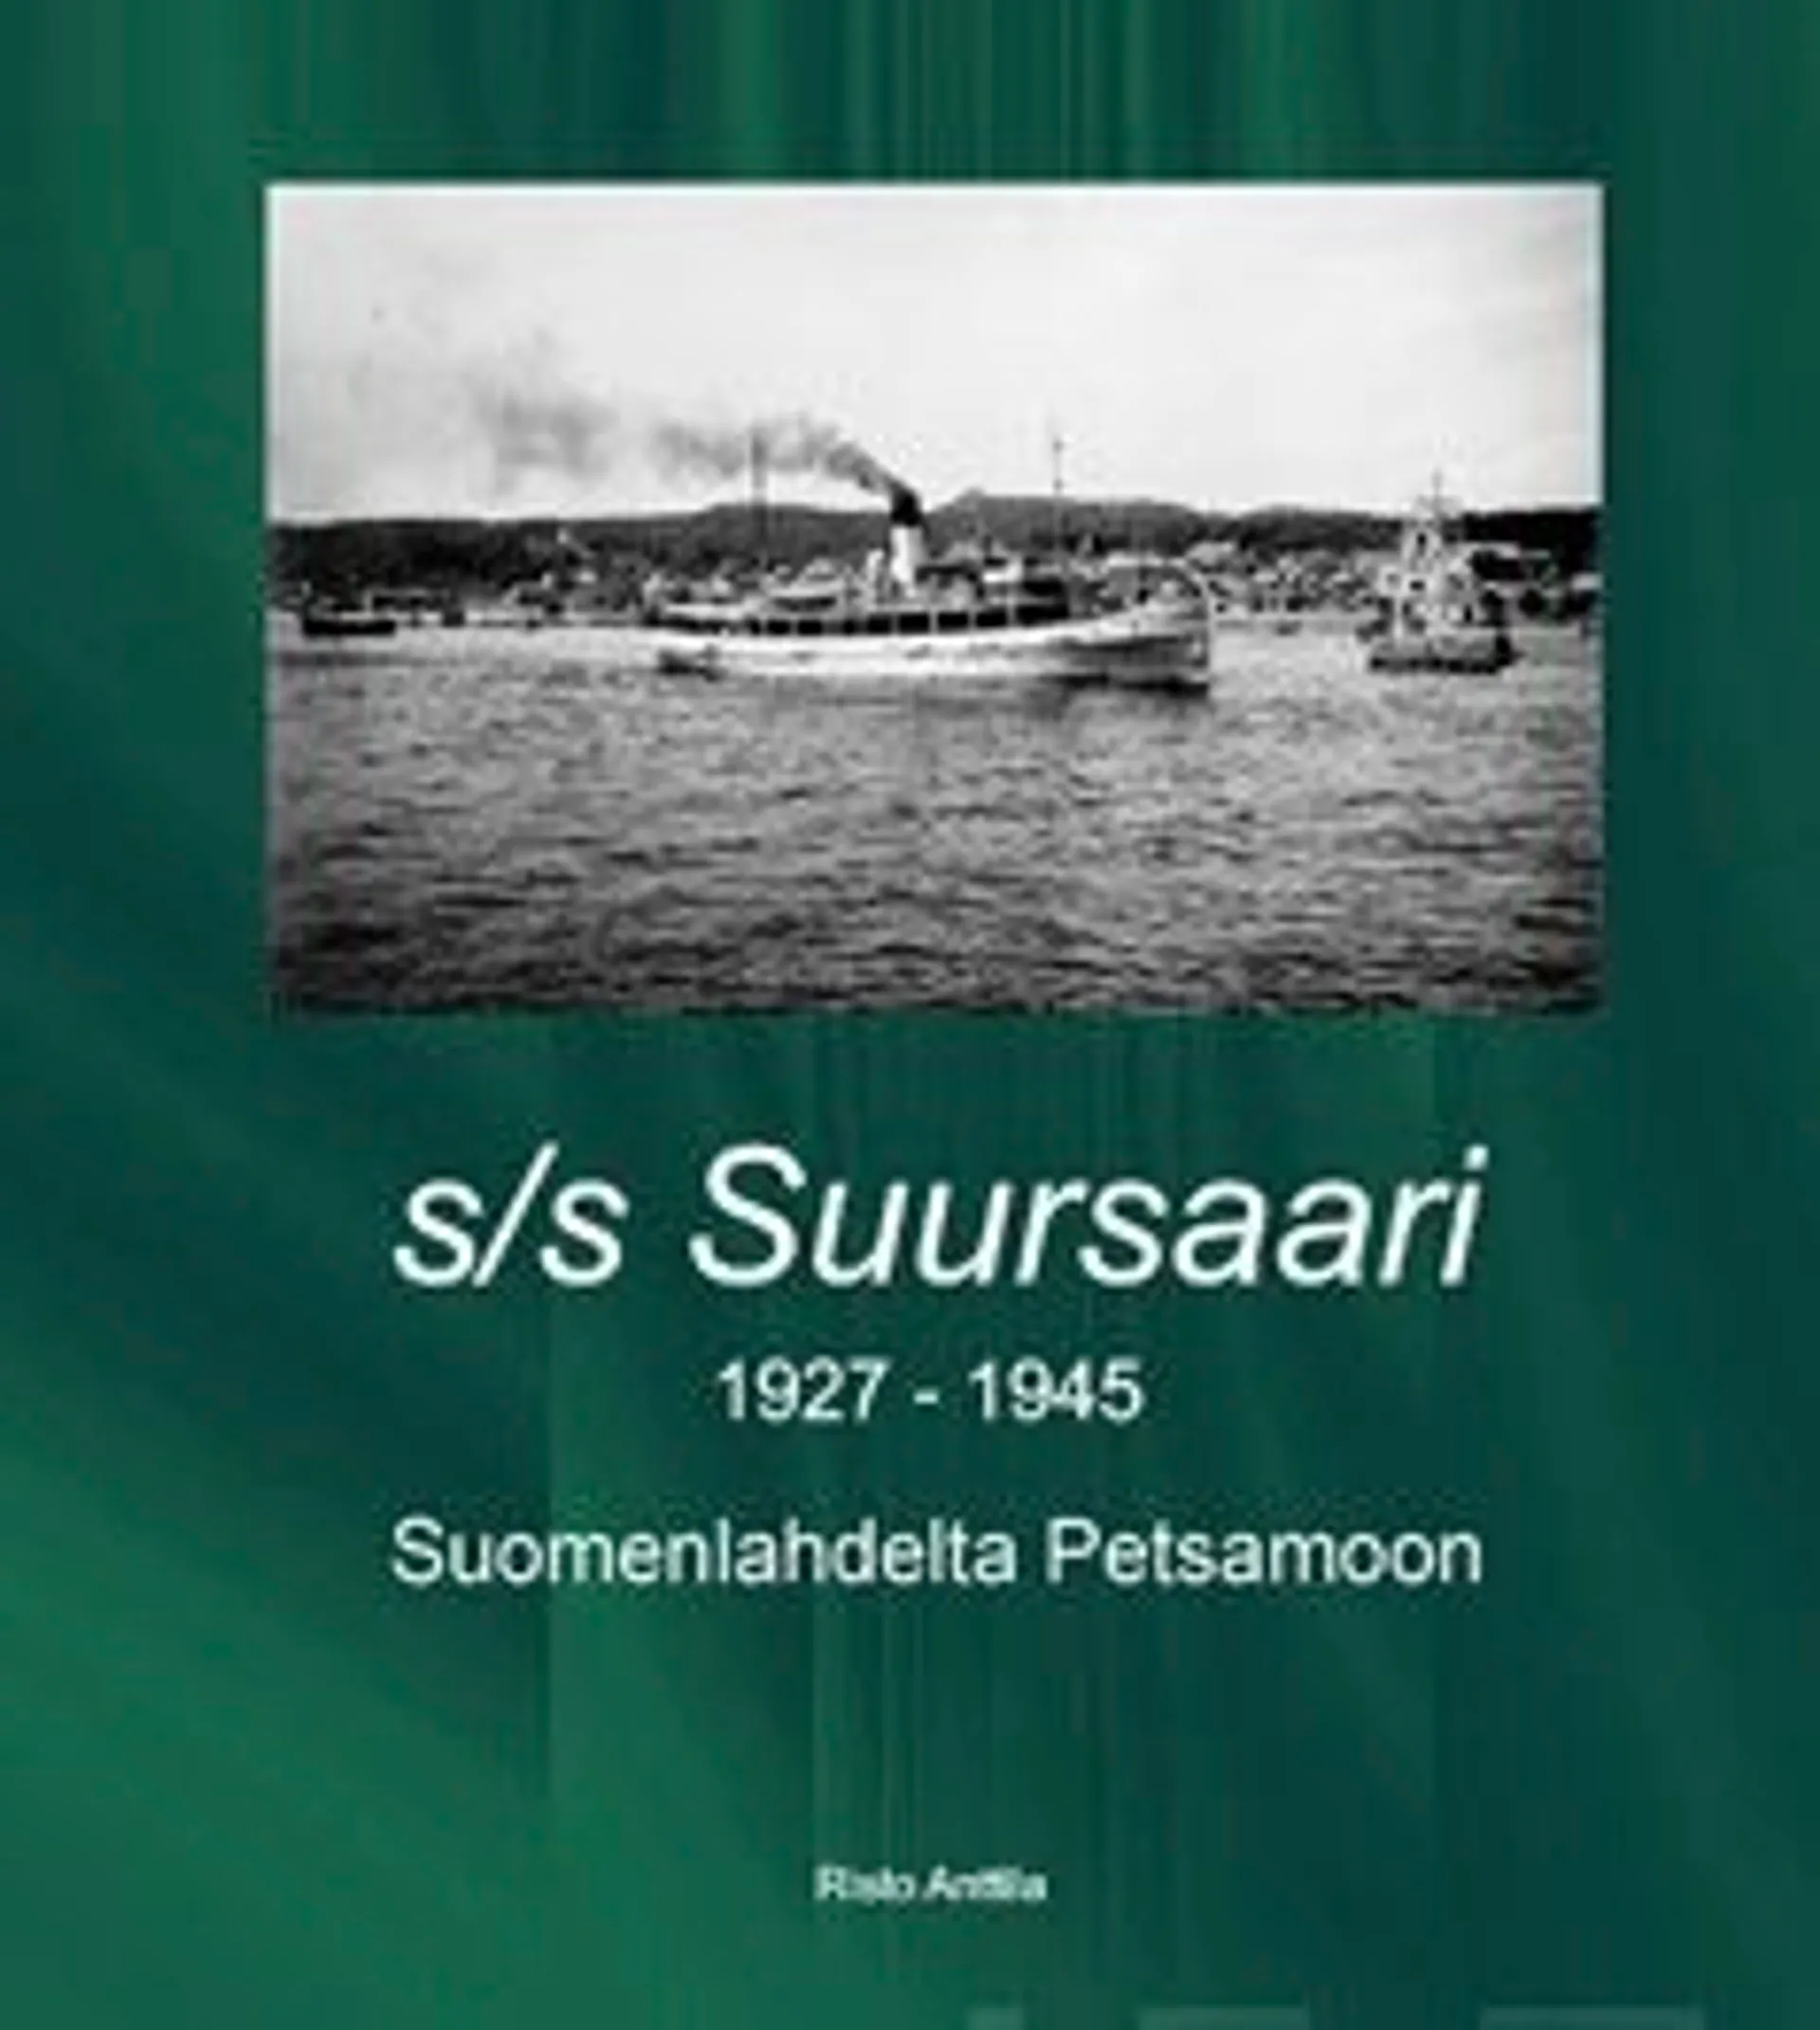 Anttila, S/s Suursaari - 1927-1945 : Suomenlahdelta Petsamoon